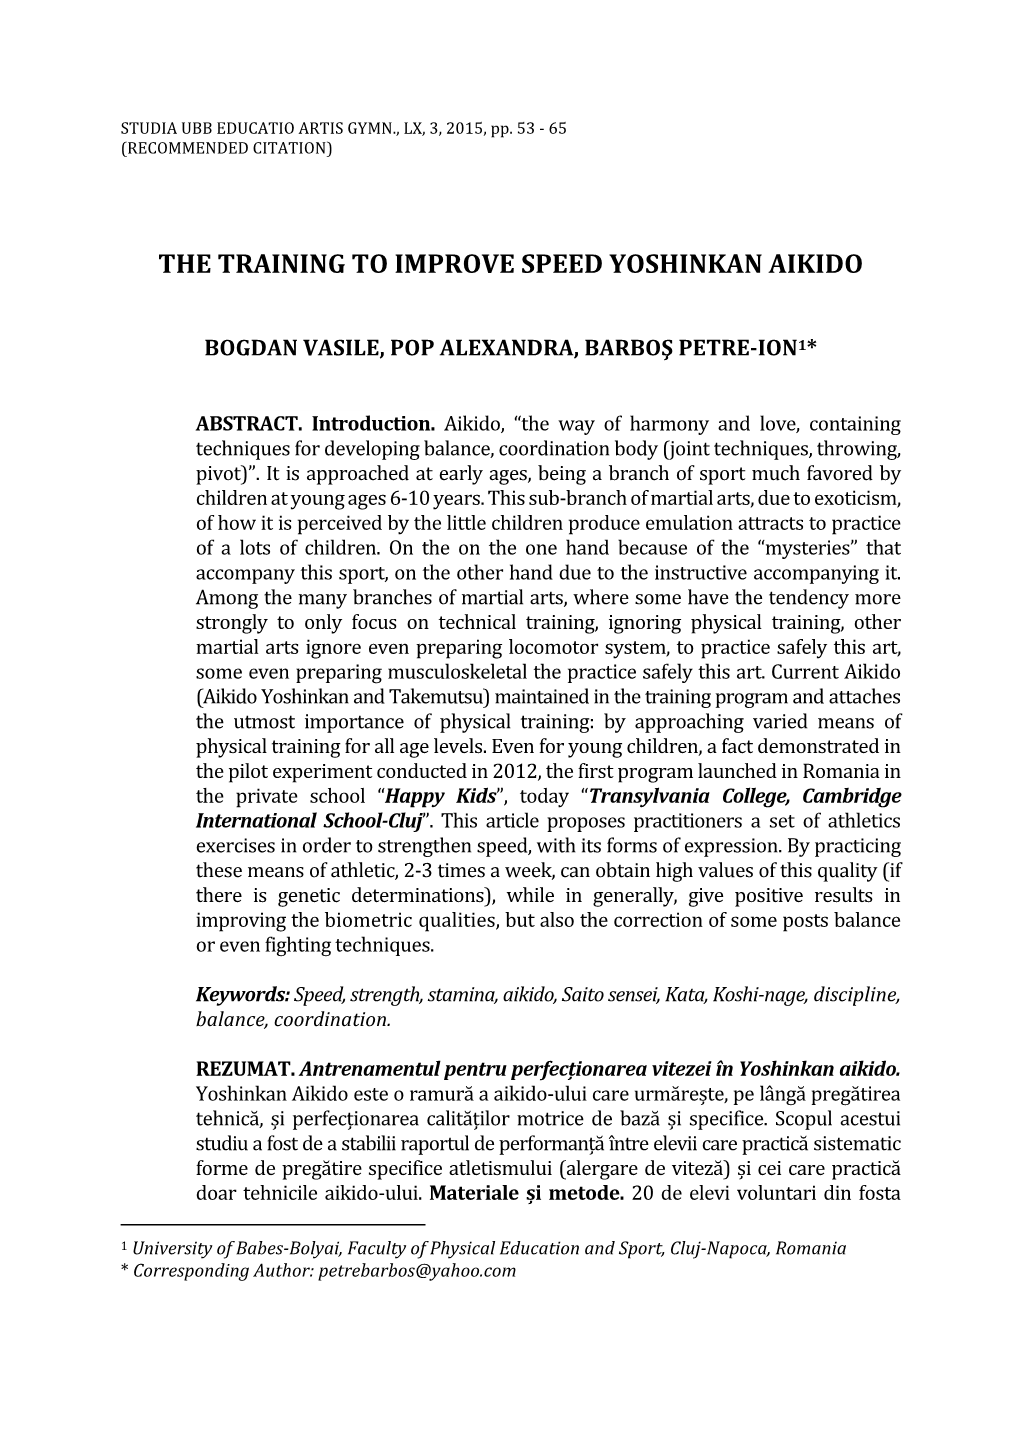 The Training to Improve Speed Yoshinkan Aikido